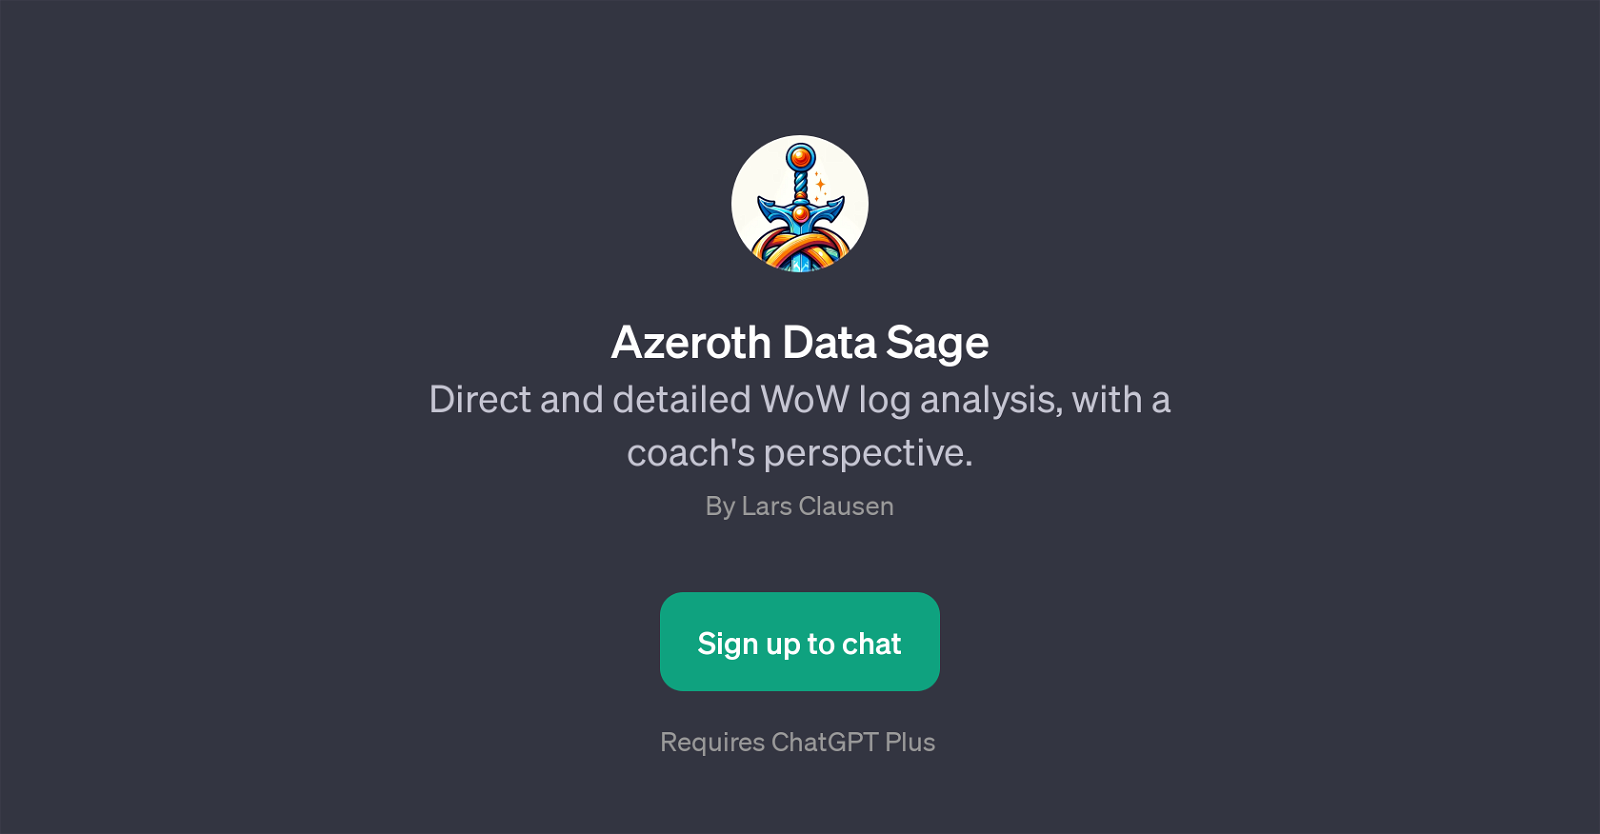 Azeroth Data Sage website